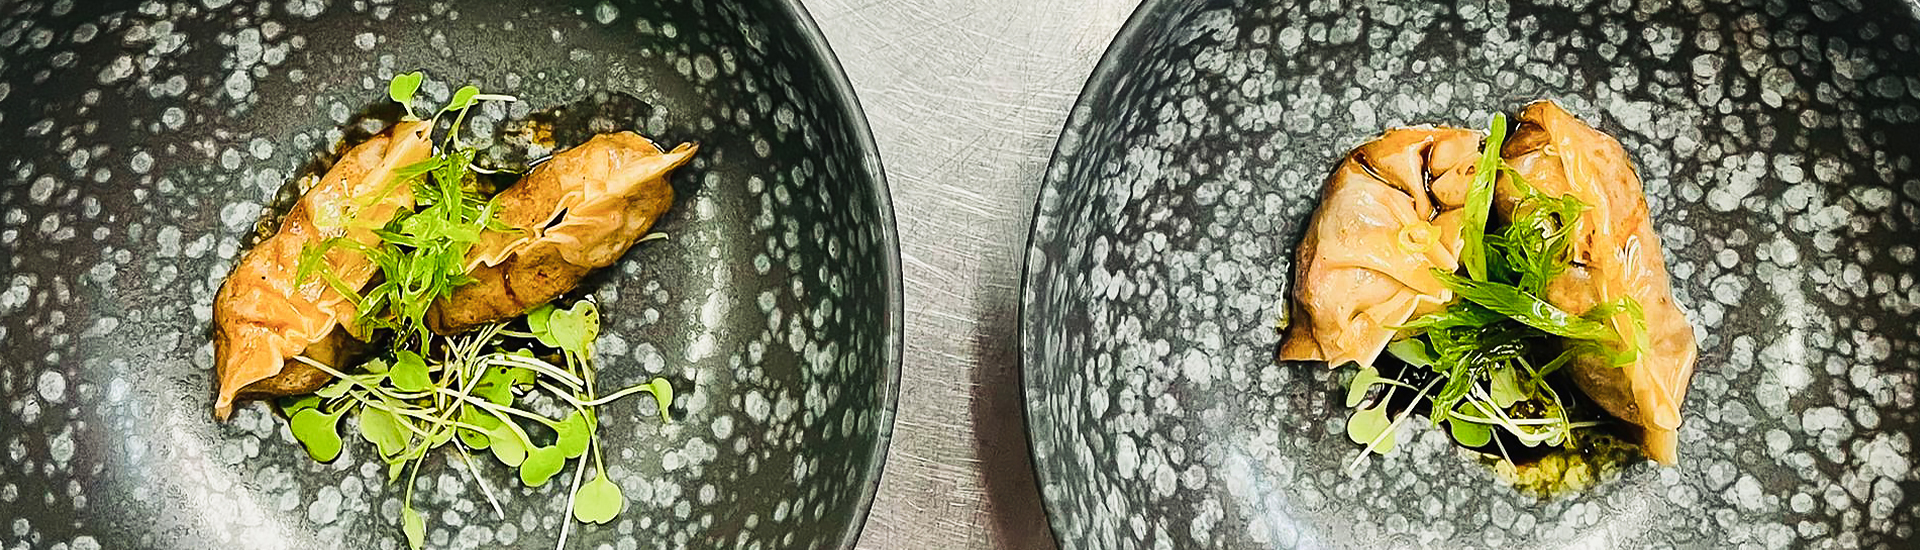 dumplings in bowls